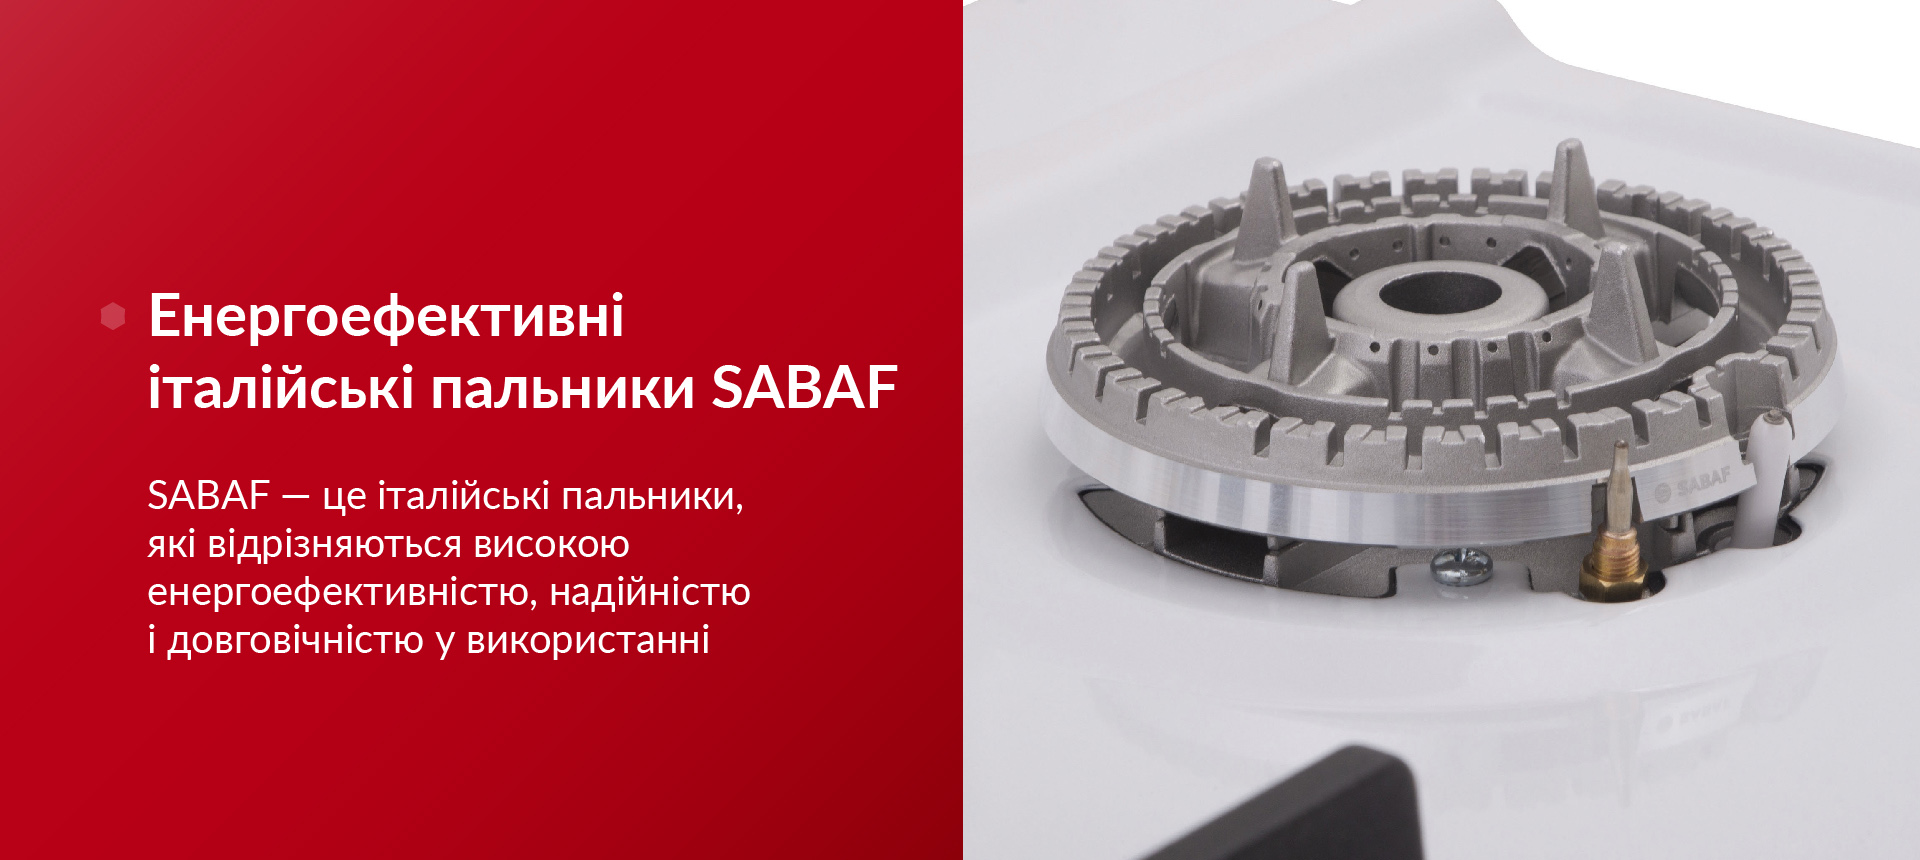 SABAF — це італійські пальники, які відрізняються високою енергоефективністю, надійністю і довговічністю у використанні